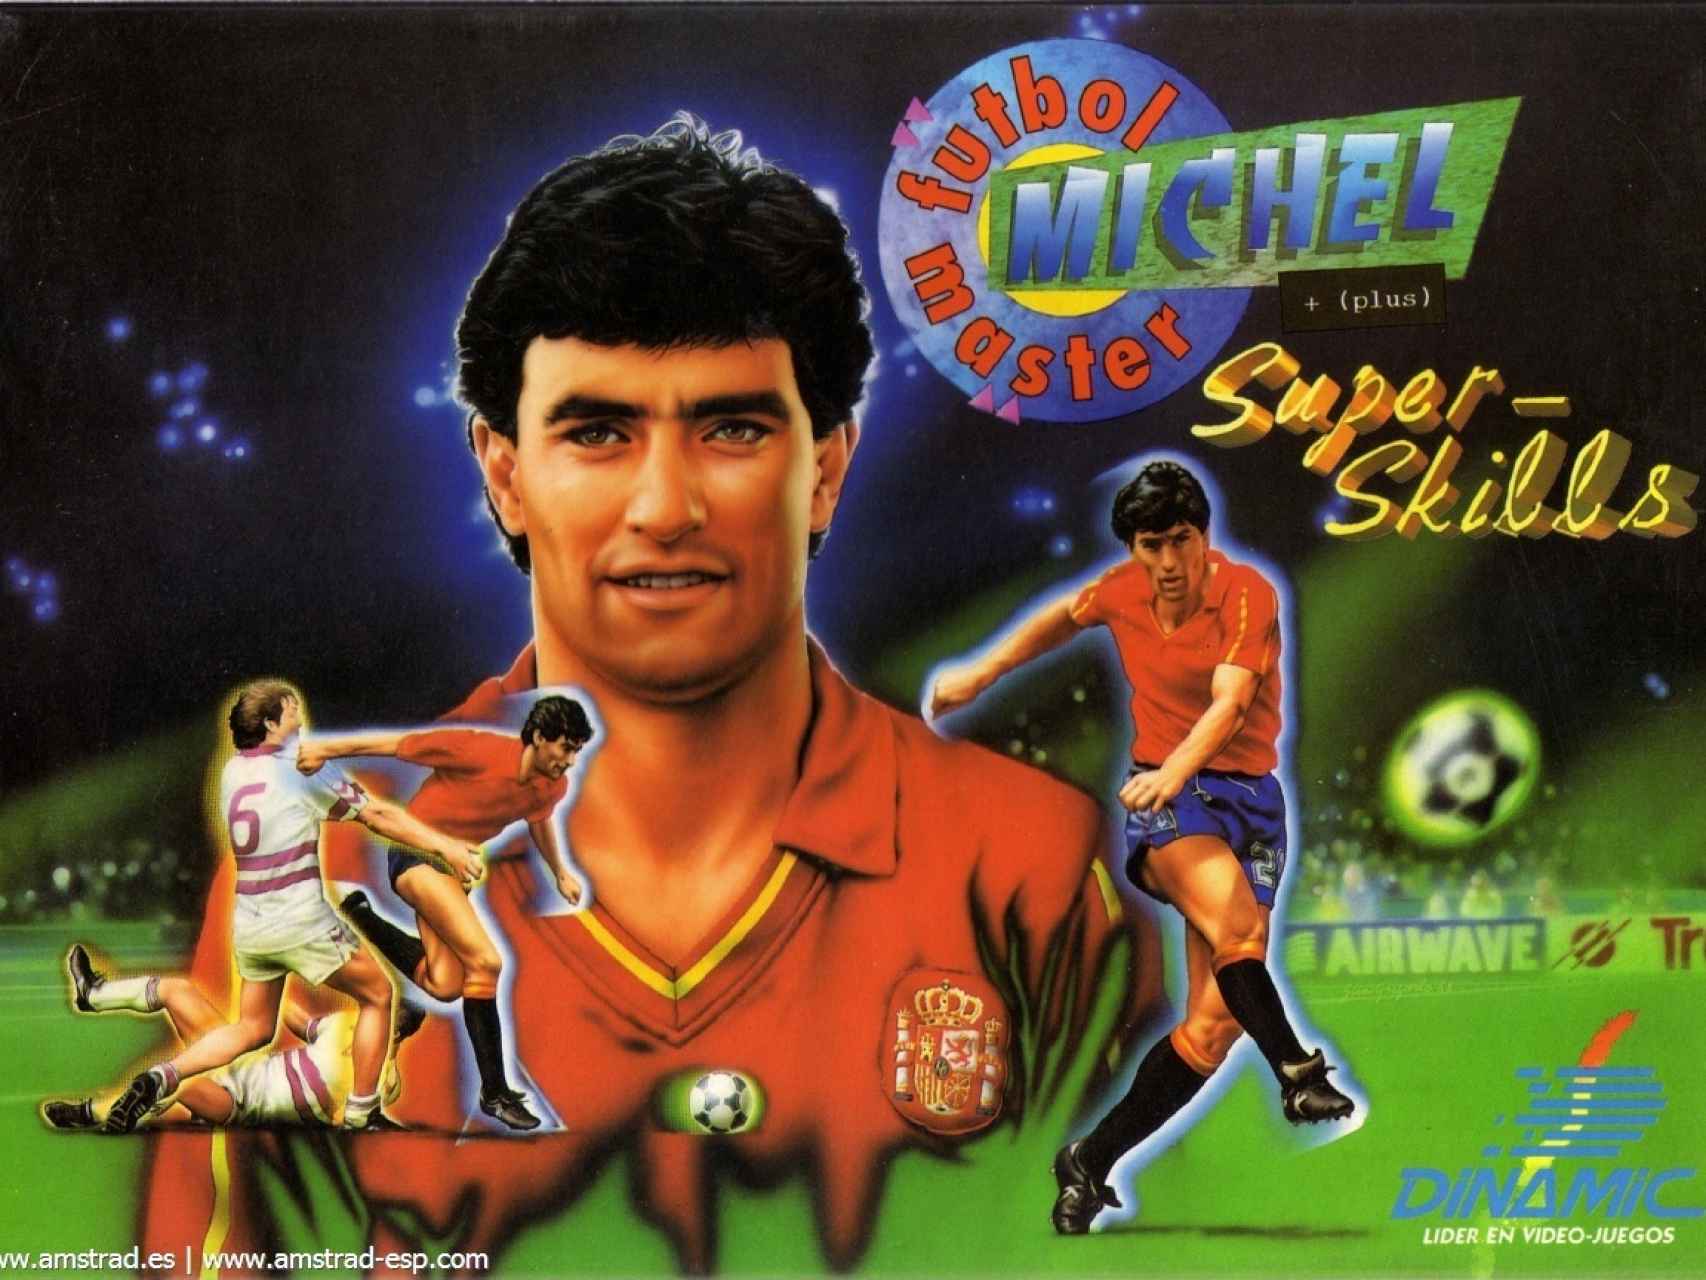 La carátula del juego Michel Fútbol Master.